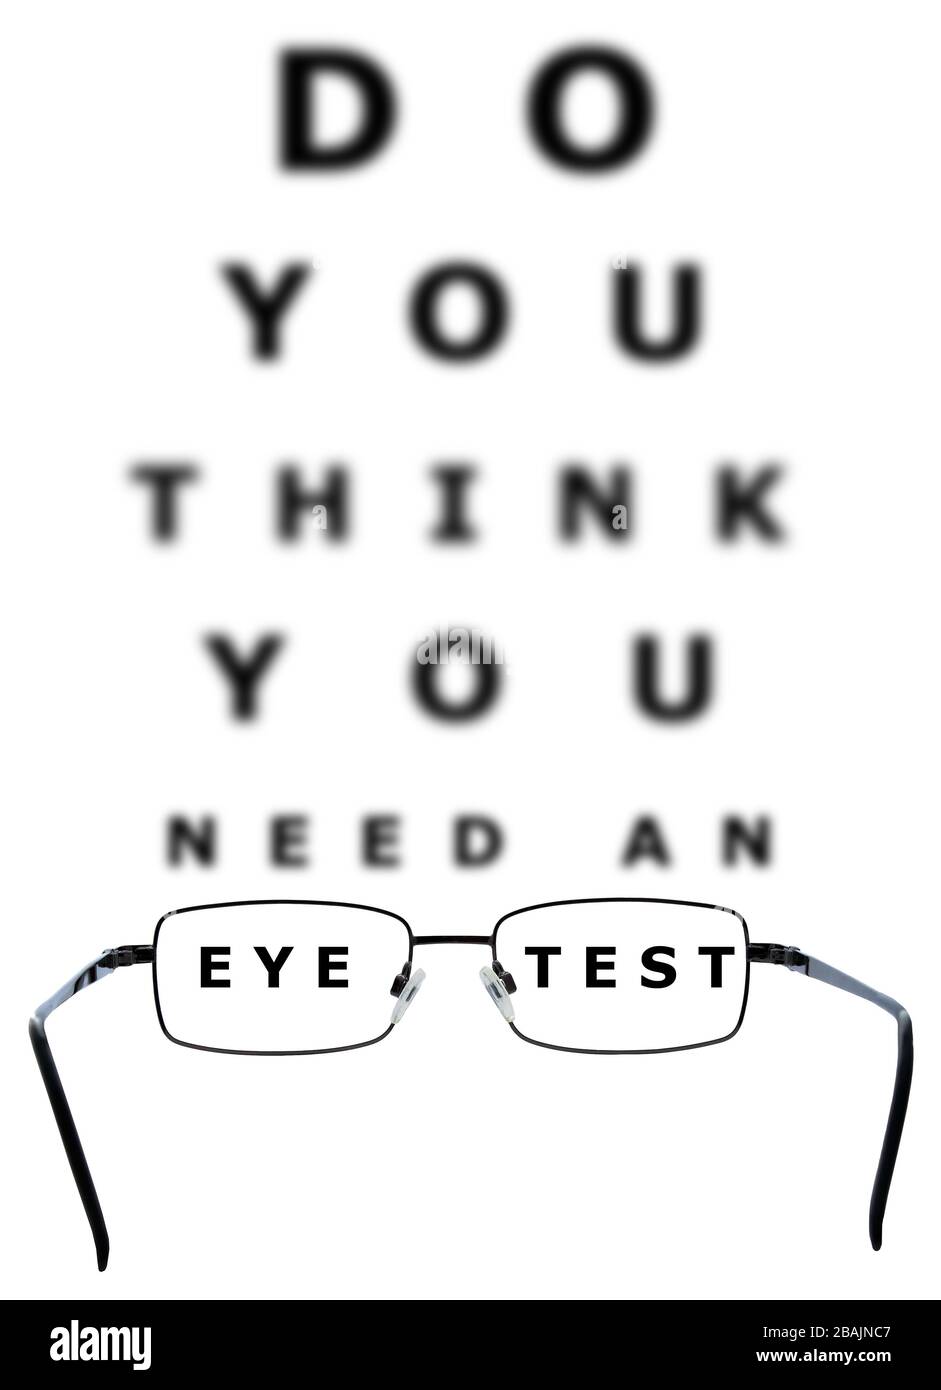 Tableau d'examen des yeux avec toutes les lettres floues en dehors des mots  œil et test à travers les lunettes sur un fond blanc isolé Photo Stock -  Alamy